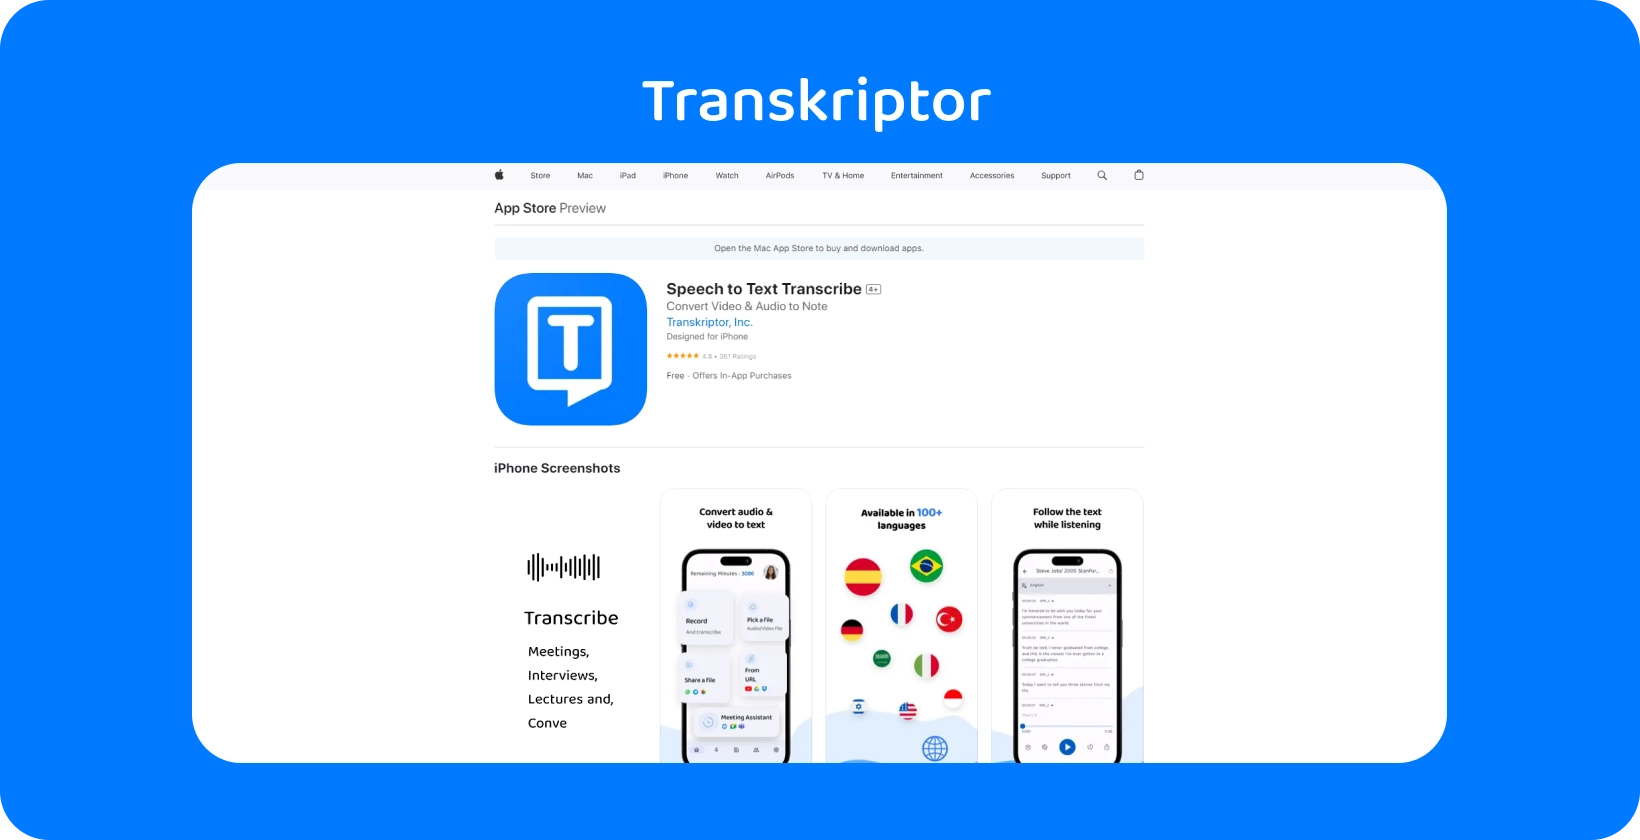 Transkriptor applikation visas på iPhone och lyfter fram dess tal-till-text-transkriptionsfunktioner.